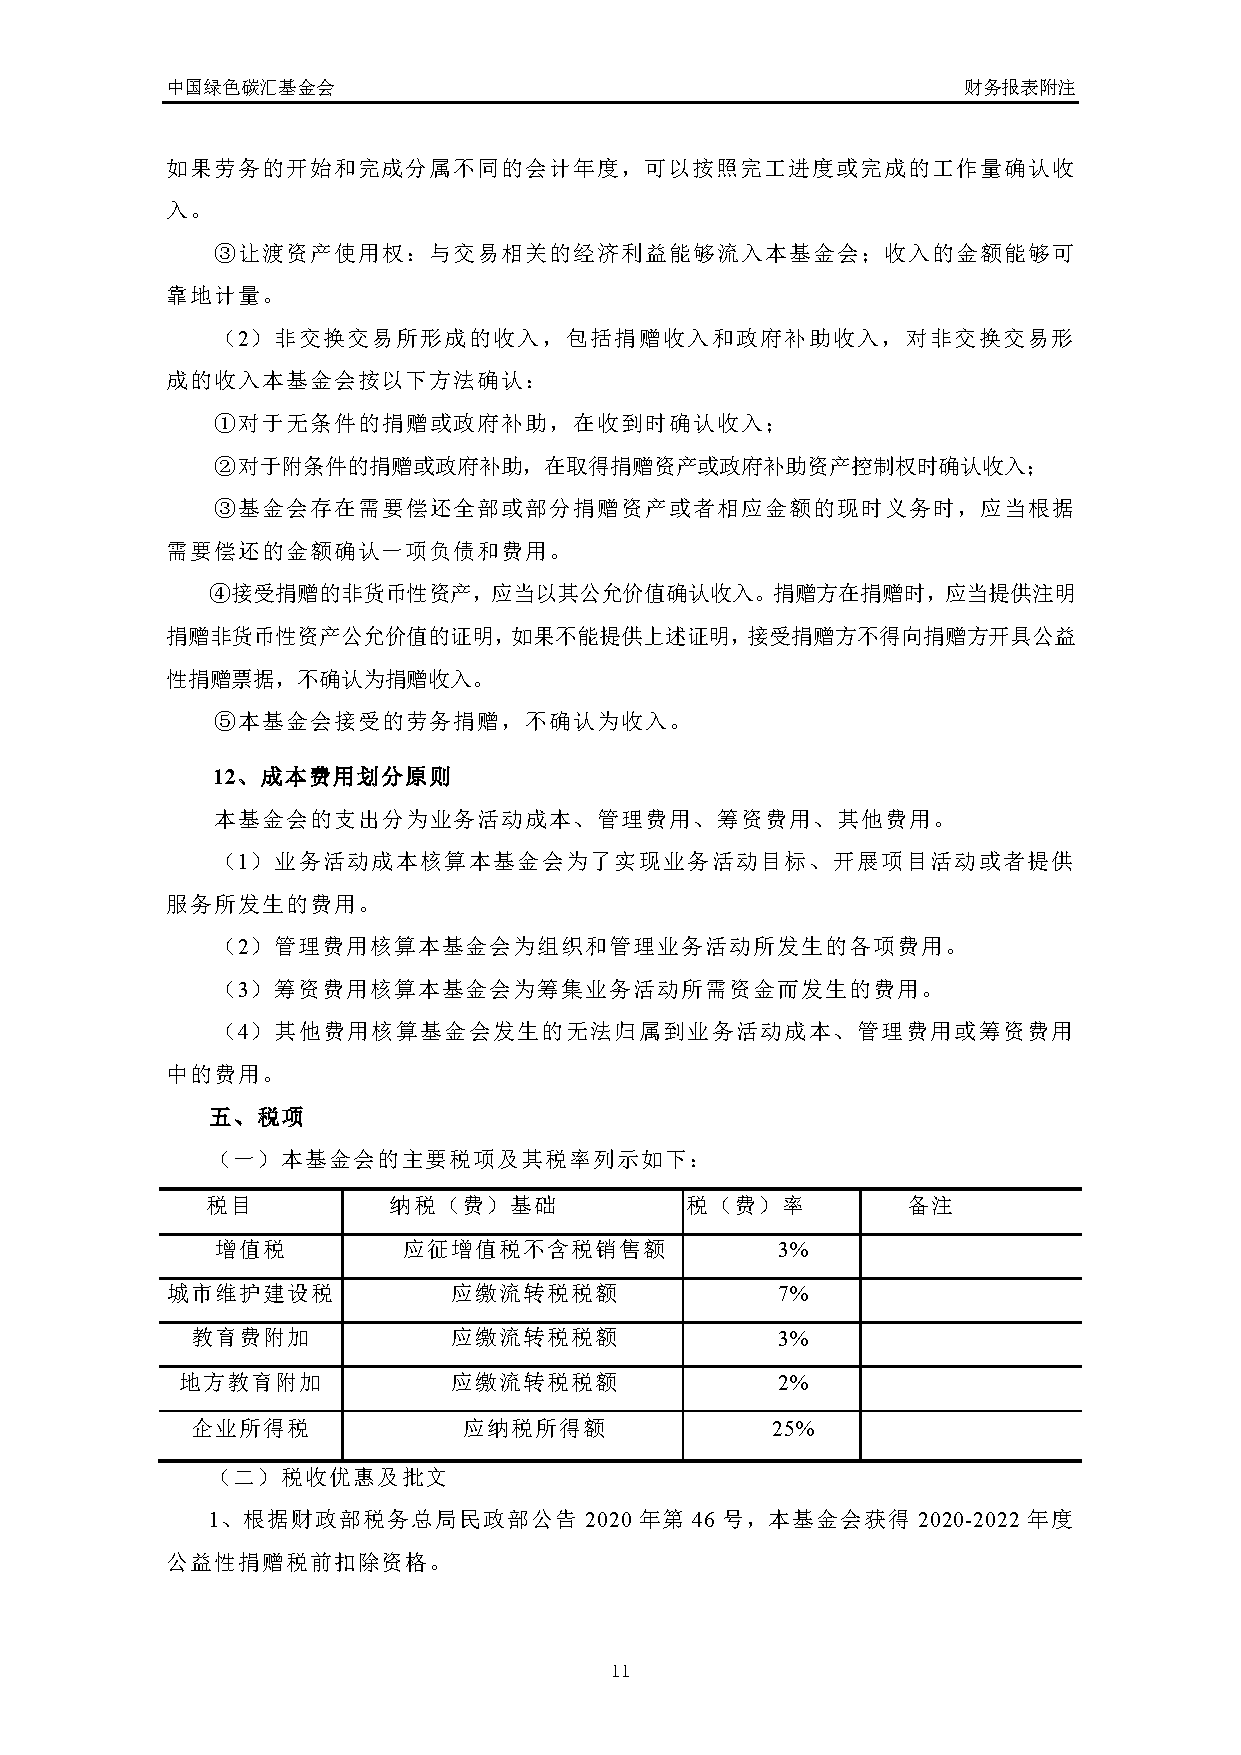 中国绿色碳汇基金会2021年度审计报告_页面_12